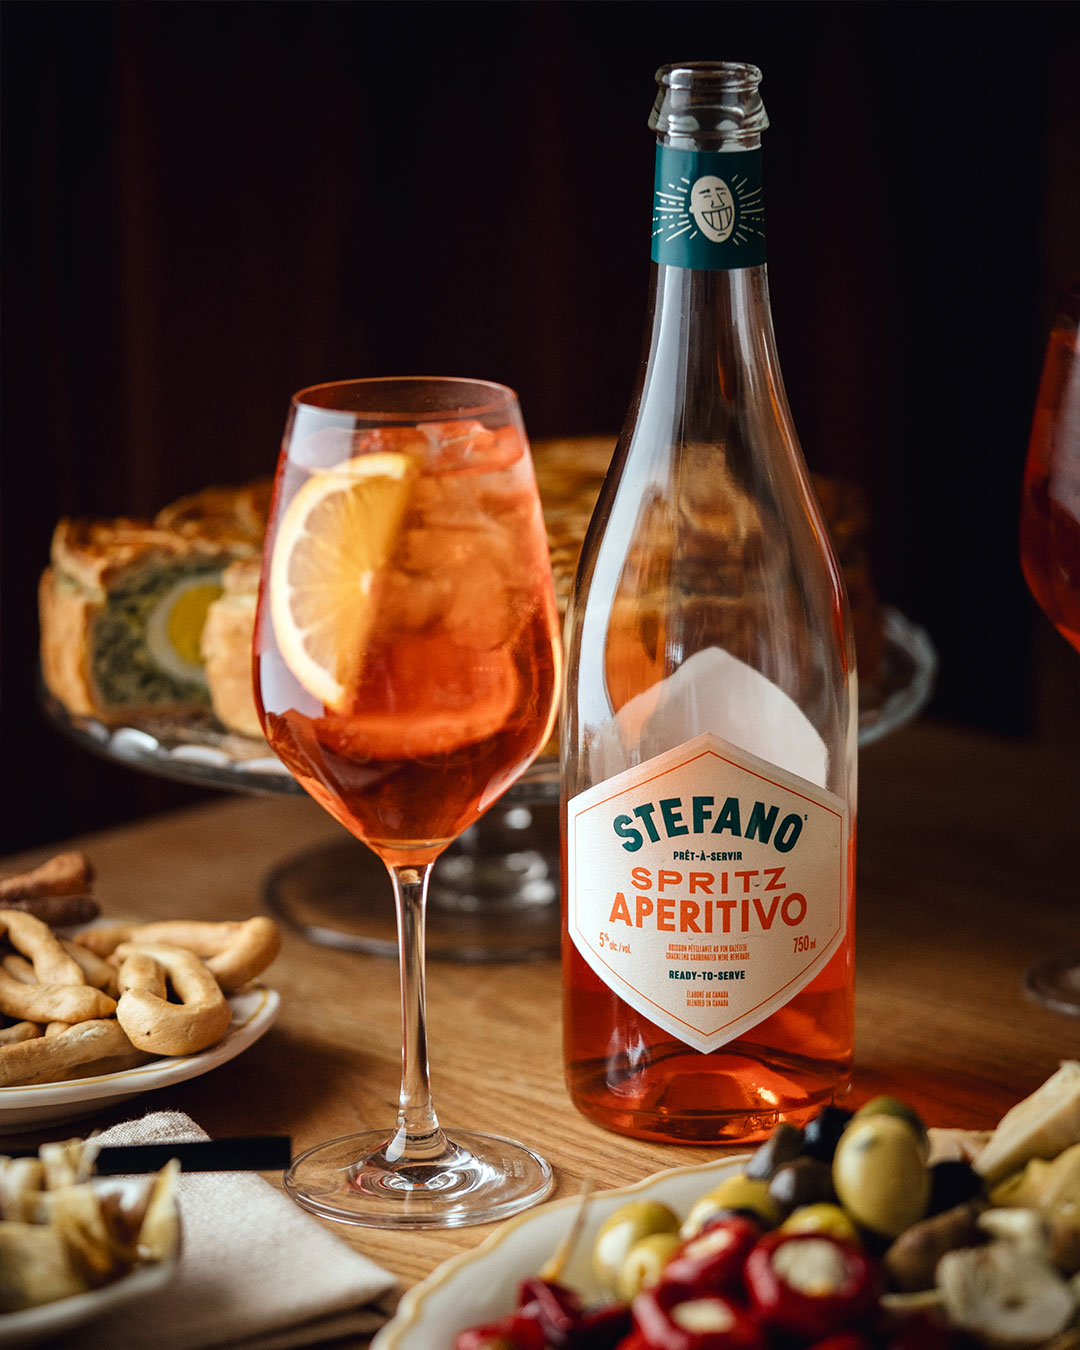 Notre nouveau Spritz Aperitivo Stefano, c’est un petit raccourci vers un moment de dolce vita à l’italienne simple et sophistiqué. Préparé avec notre vin blanc Catarratto, de l’eau gazéifiée et une infusion d’herbes et de zeste d’orange amère, c’est une solution prête-à-boire aussi pratique qu’authentique.